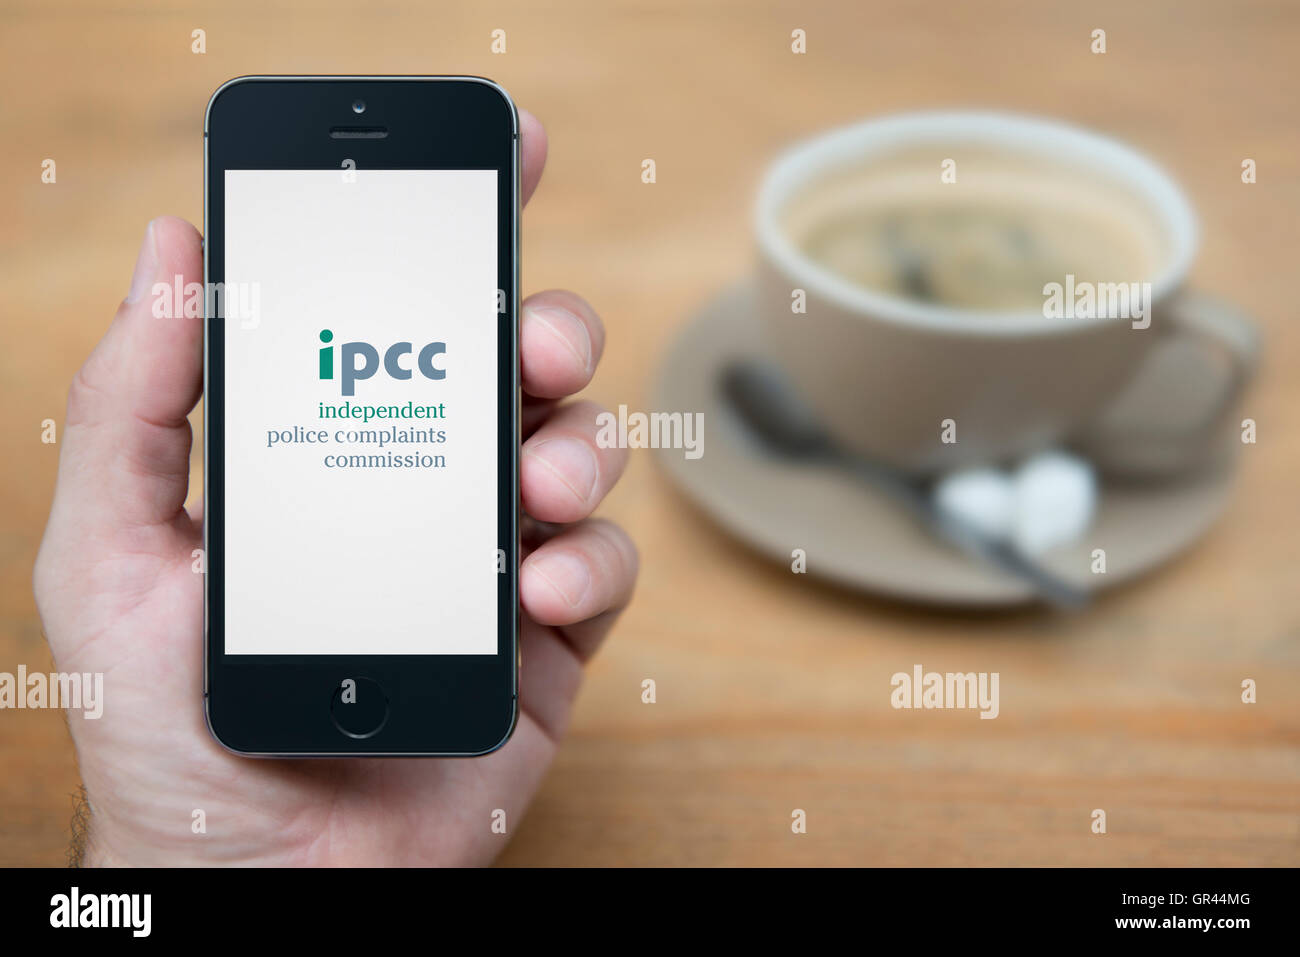 Un uomo guarda al suo iPhone che visualizza il governo britannico indipendente reclami della polizia Commissione IPCC (solo uso editoriale). Foto Stock